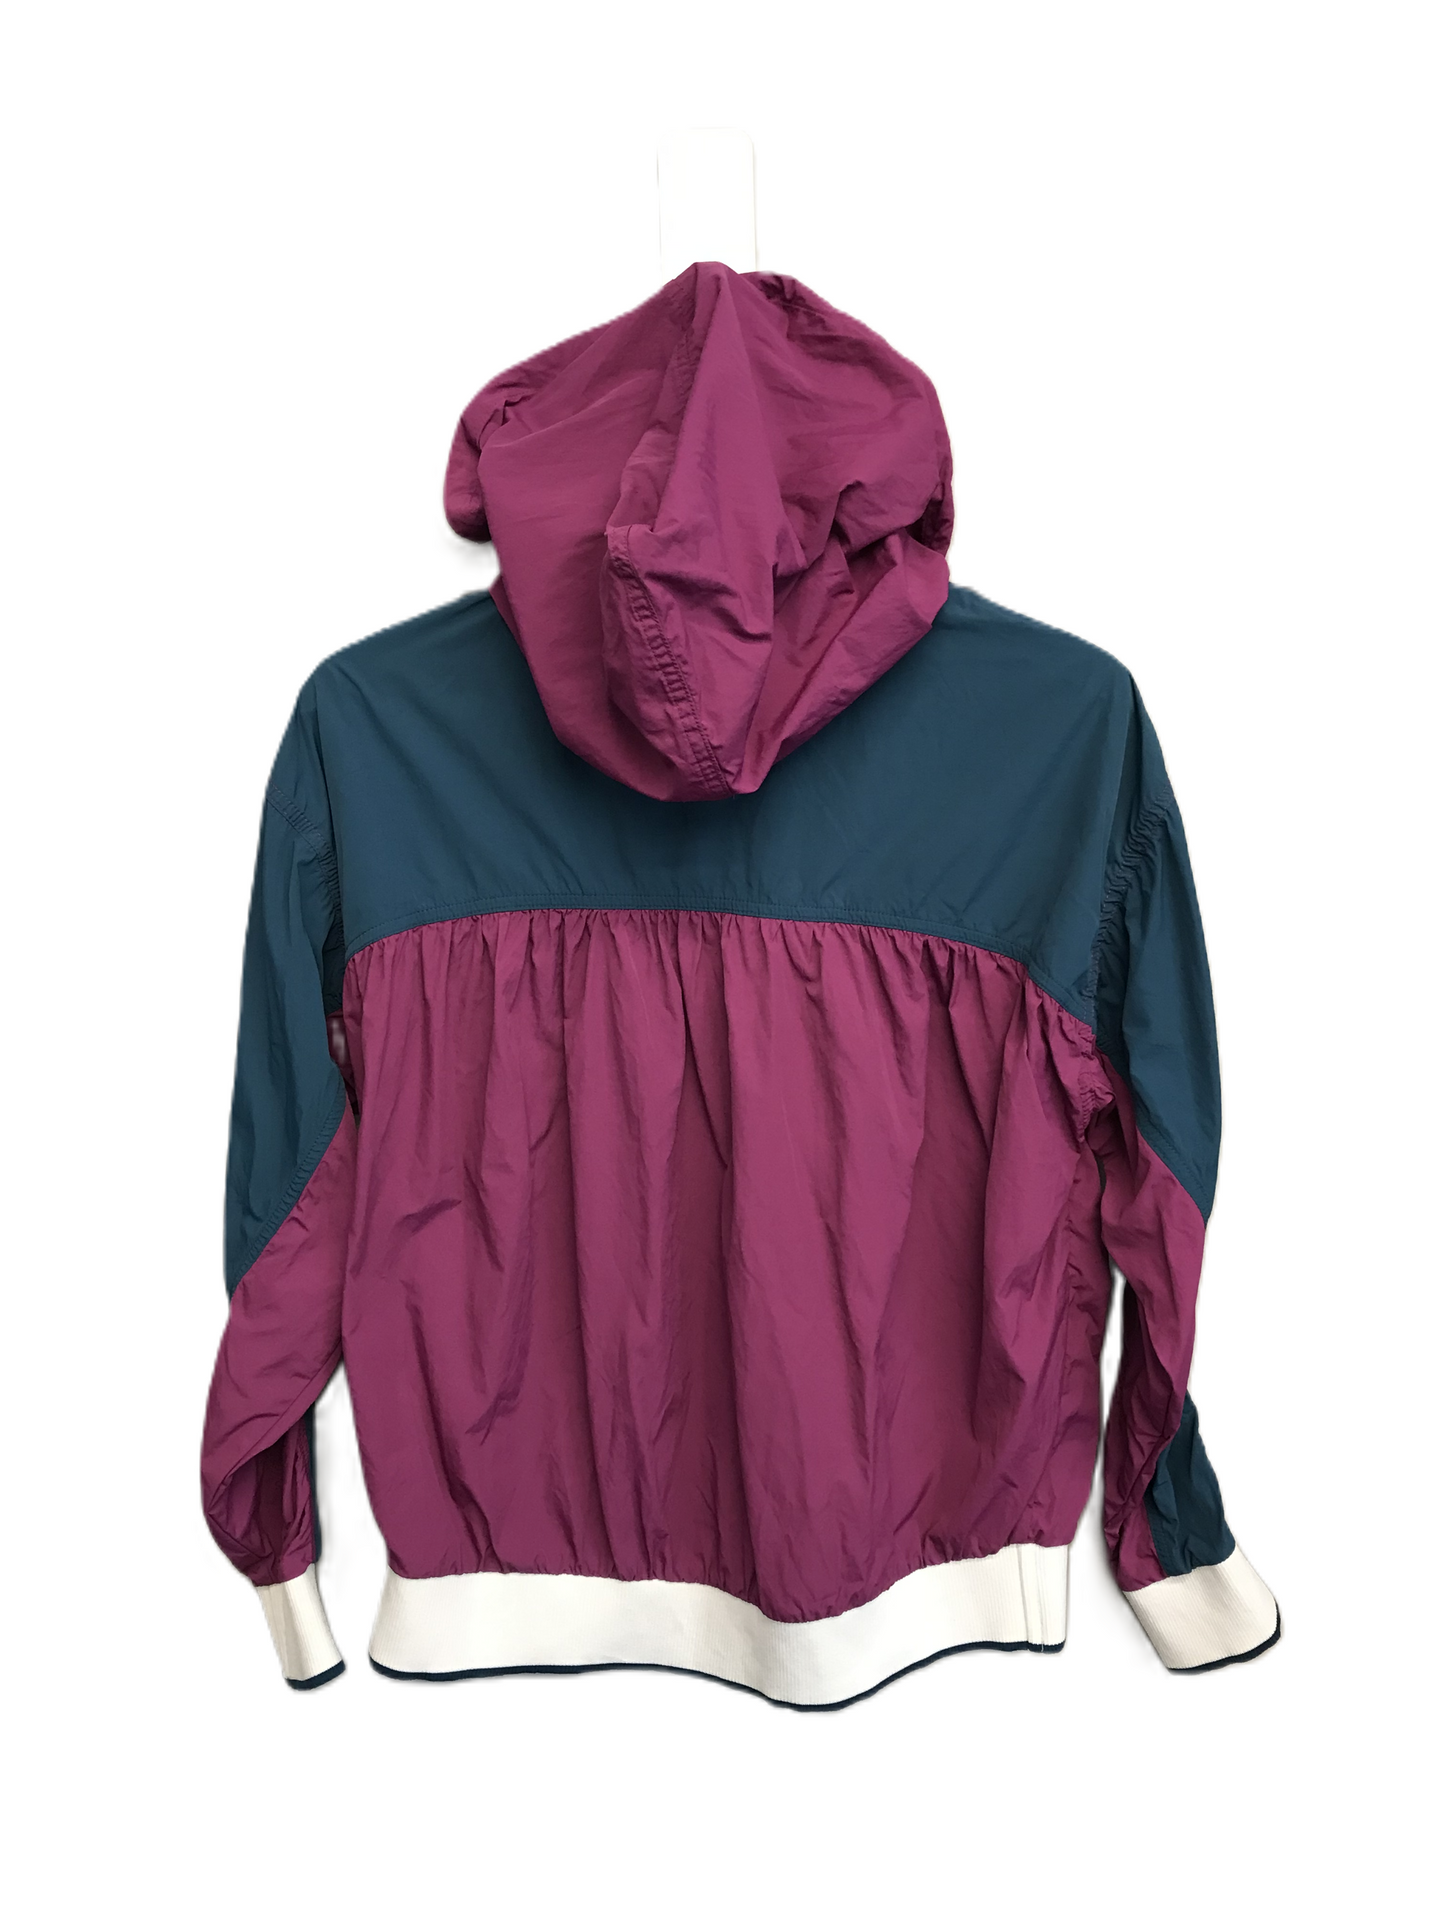 Purple Jacket Windbreaker By Free People, Size: Xs